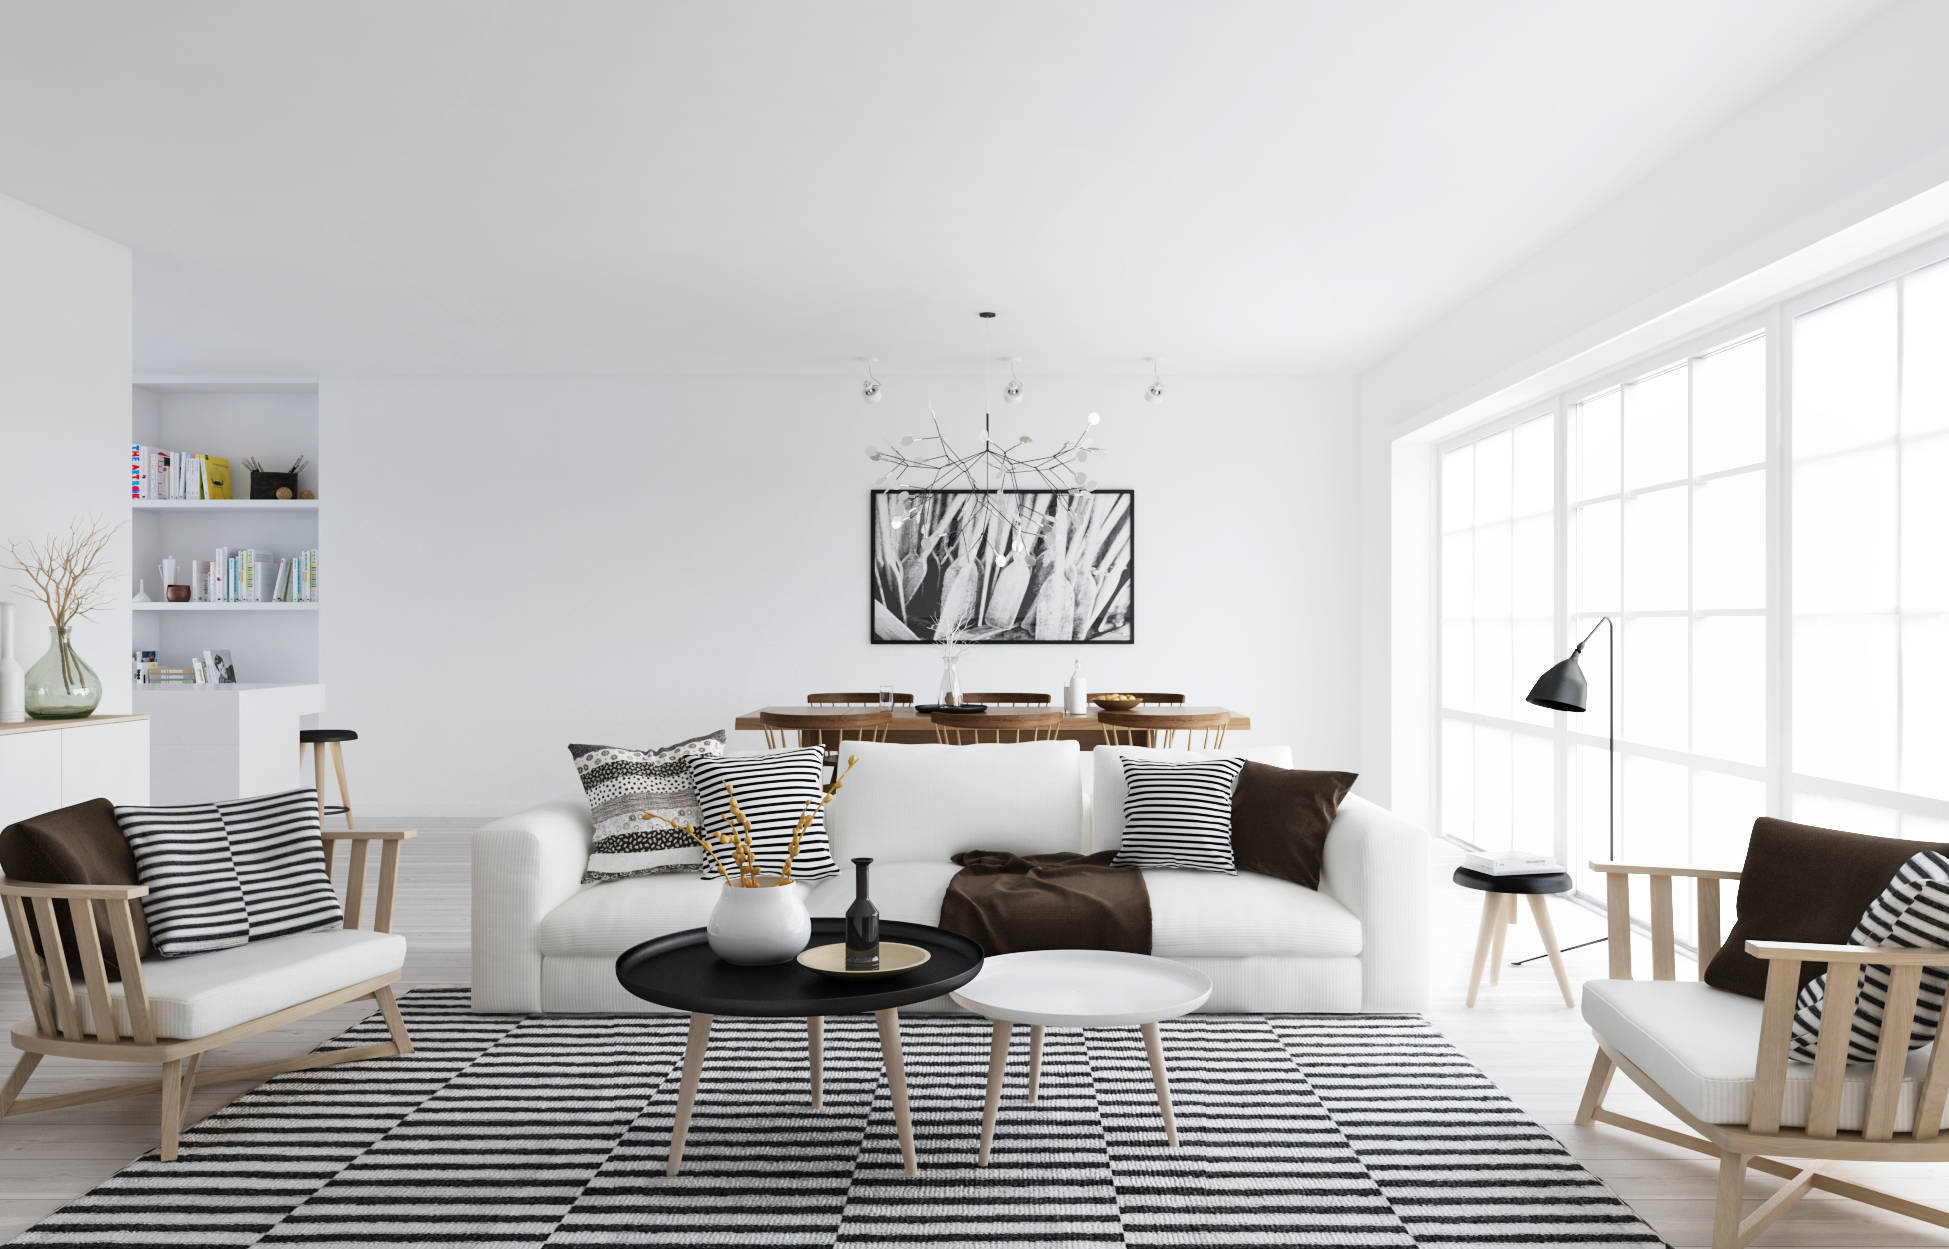 Белый цвет в интерьере дома: преимущества и недостатки | Roche Bobois